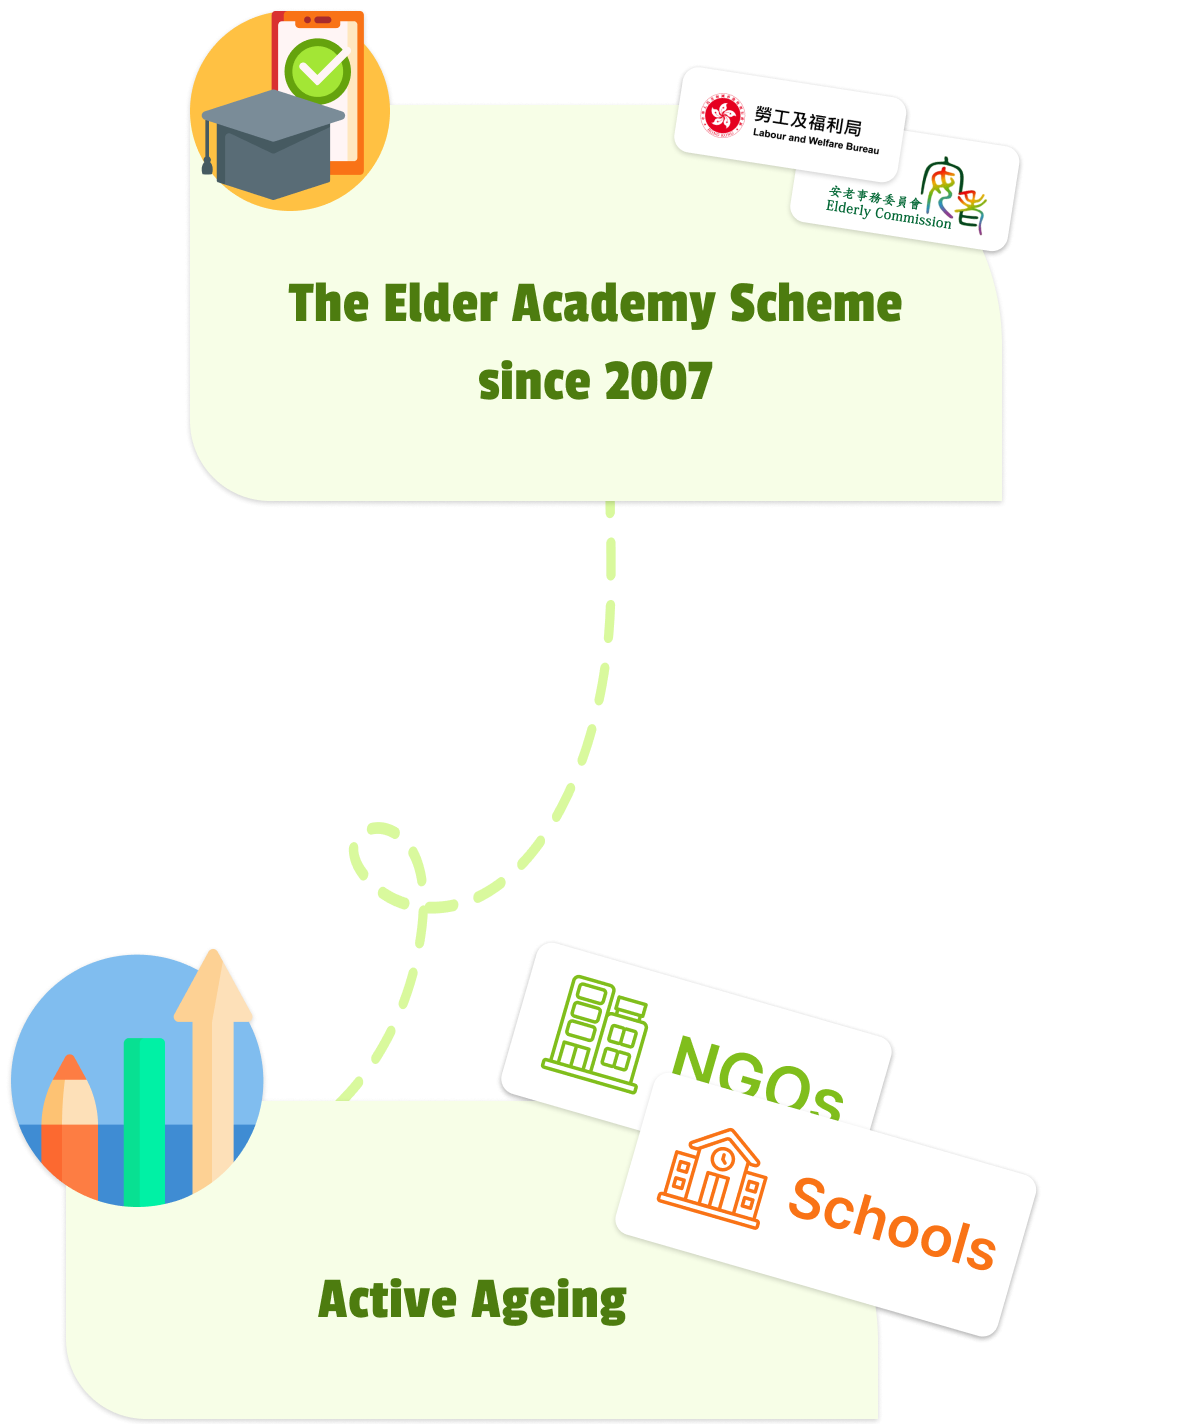 About Elder Academy